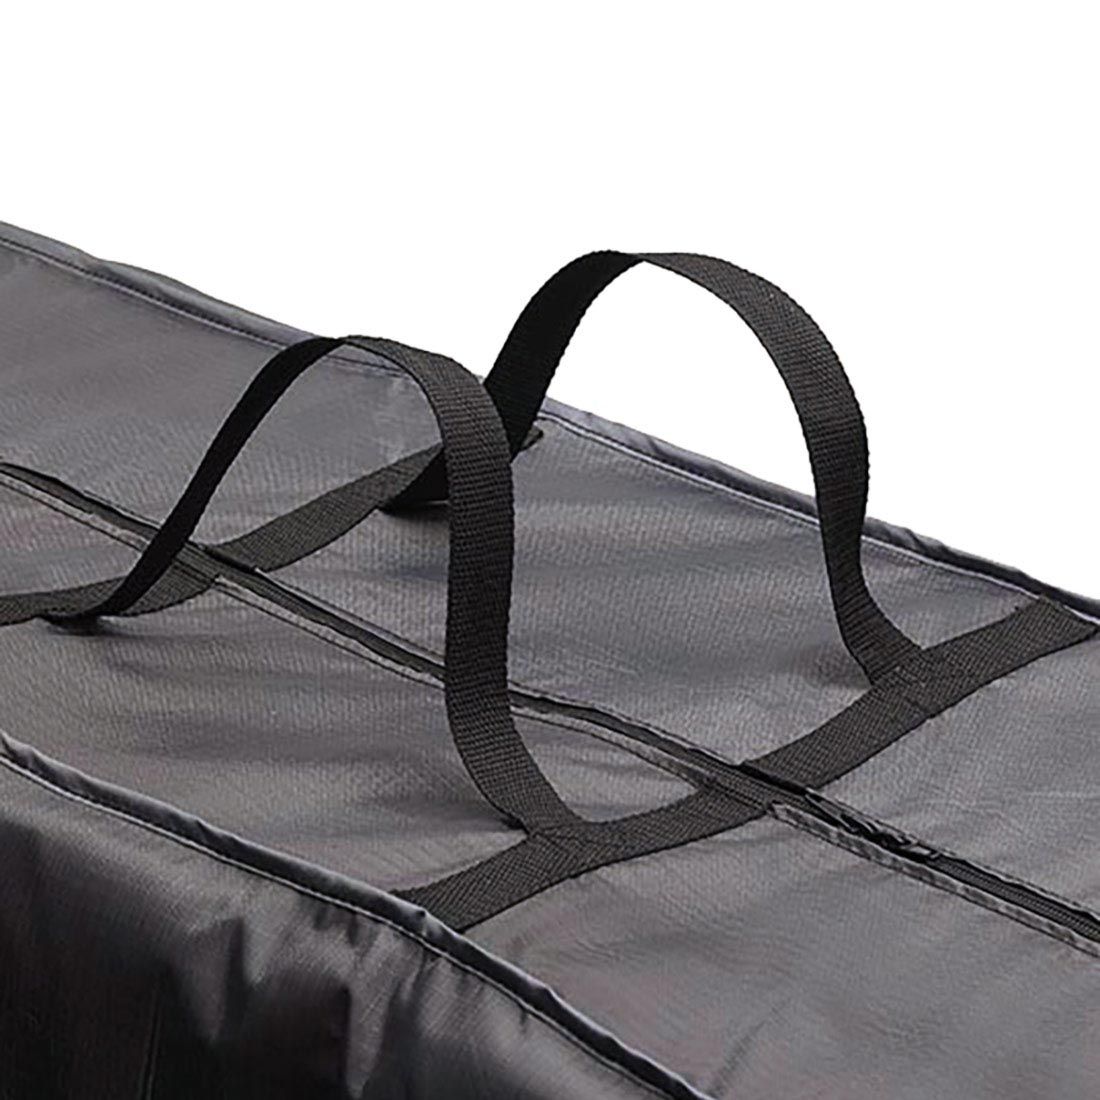 AeroCover Schutztasche für Auflagen 200x75x60cm Polyester